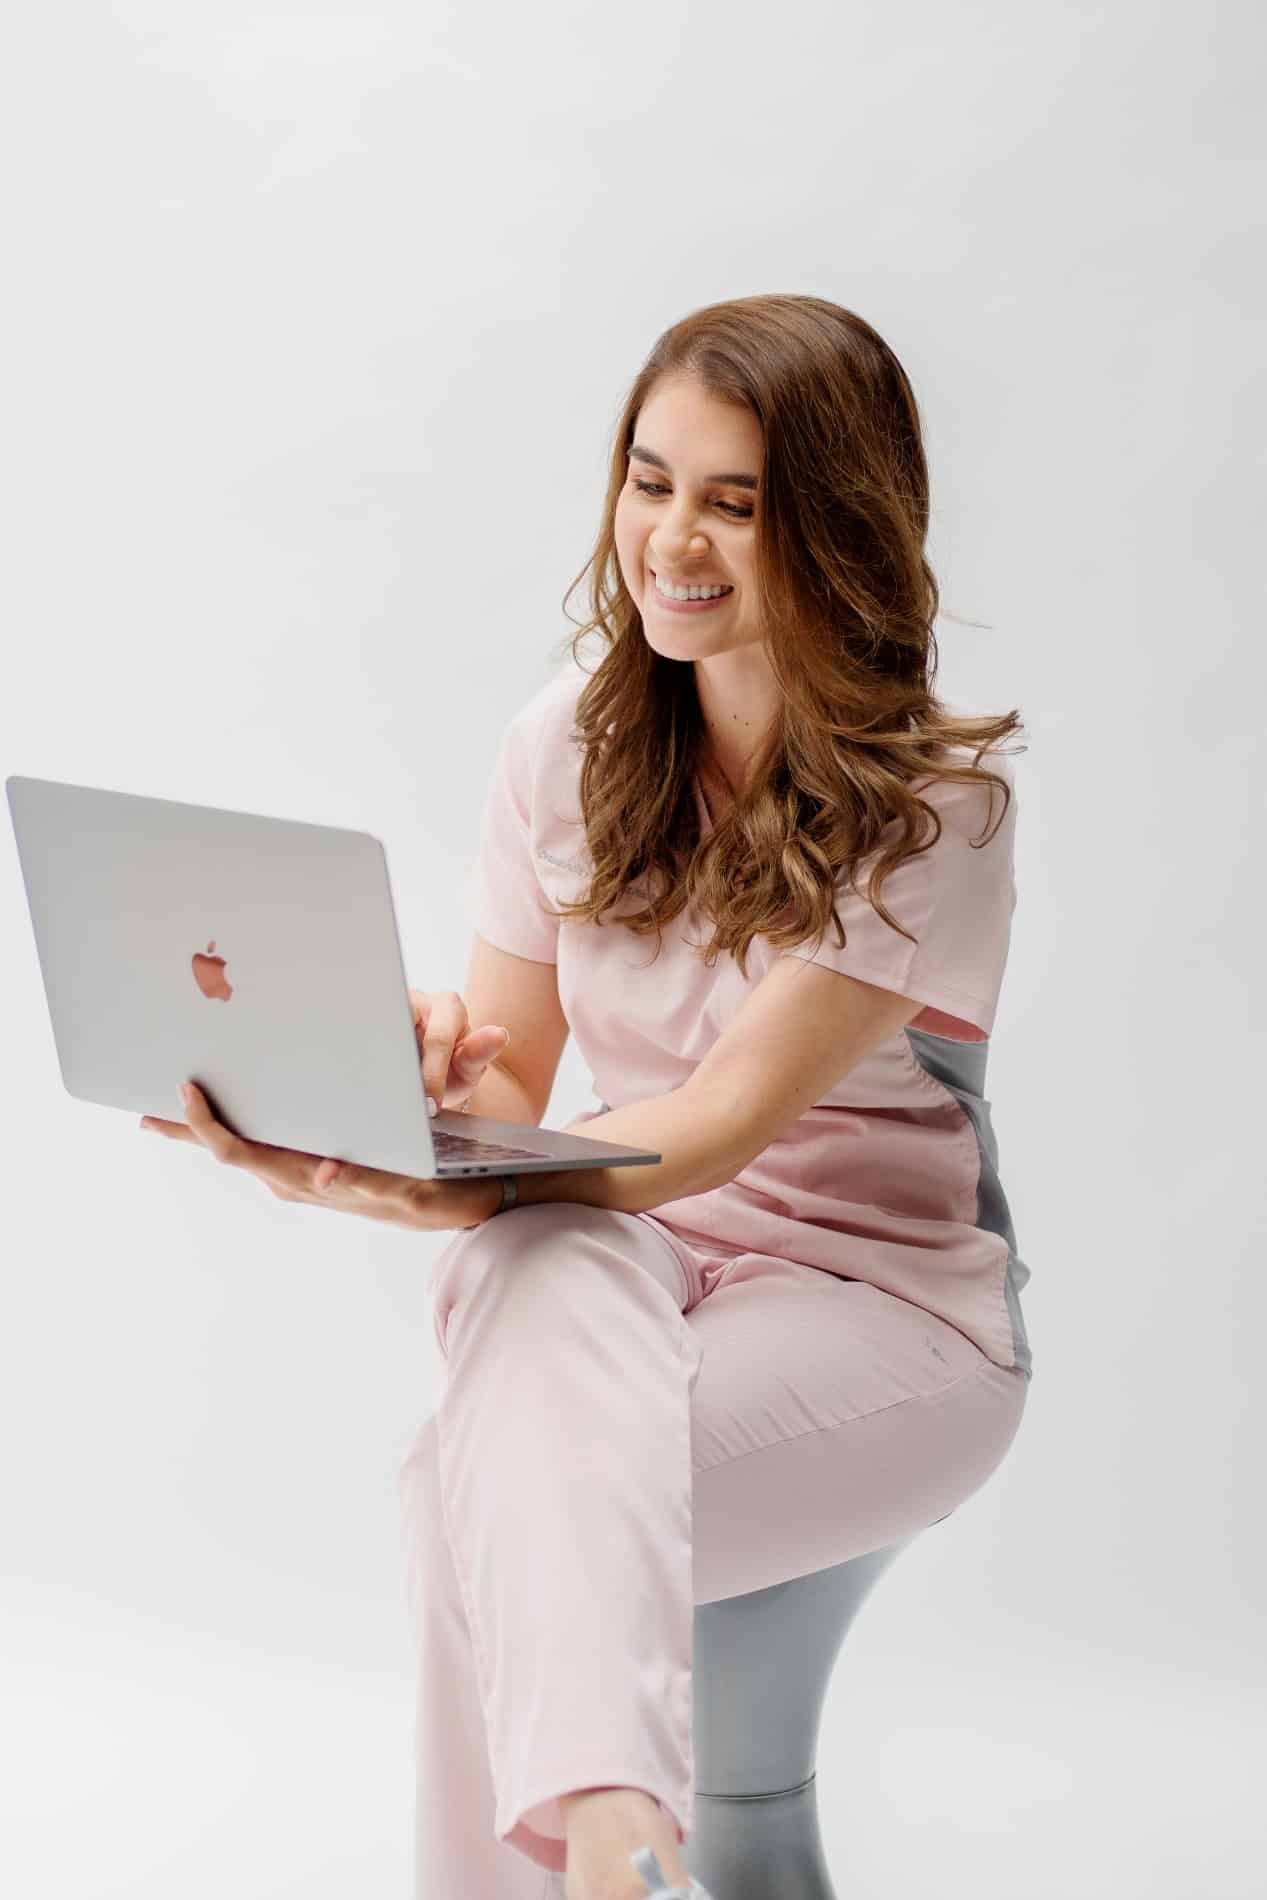 Dra. Natalia Morales sonriente y sentada en un banco usando su Macbook Pro bajo un fondo blanco